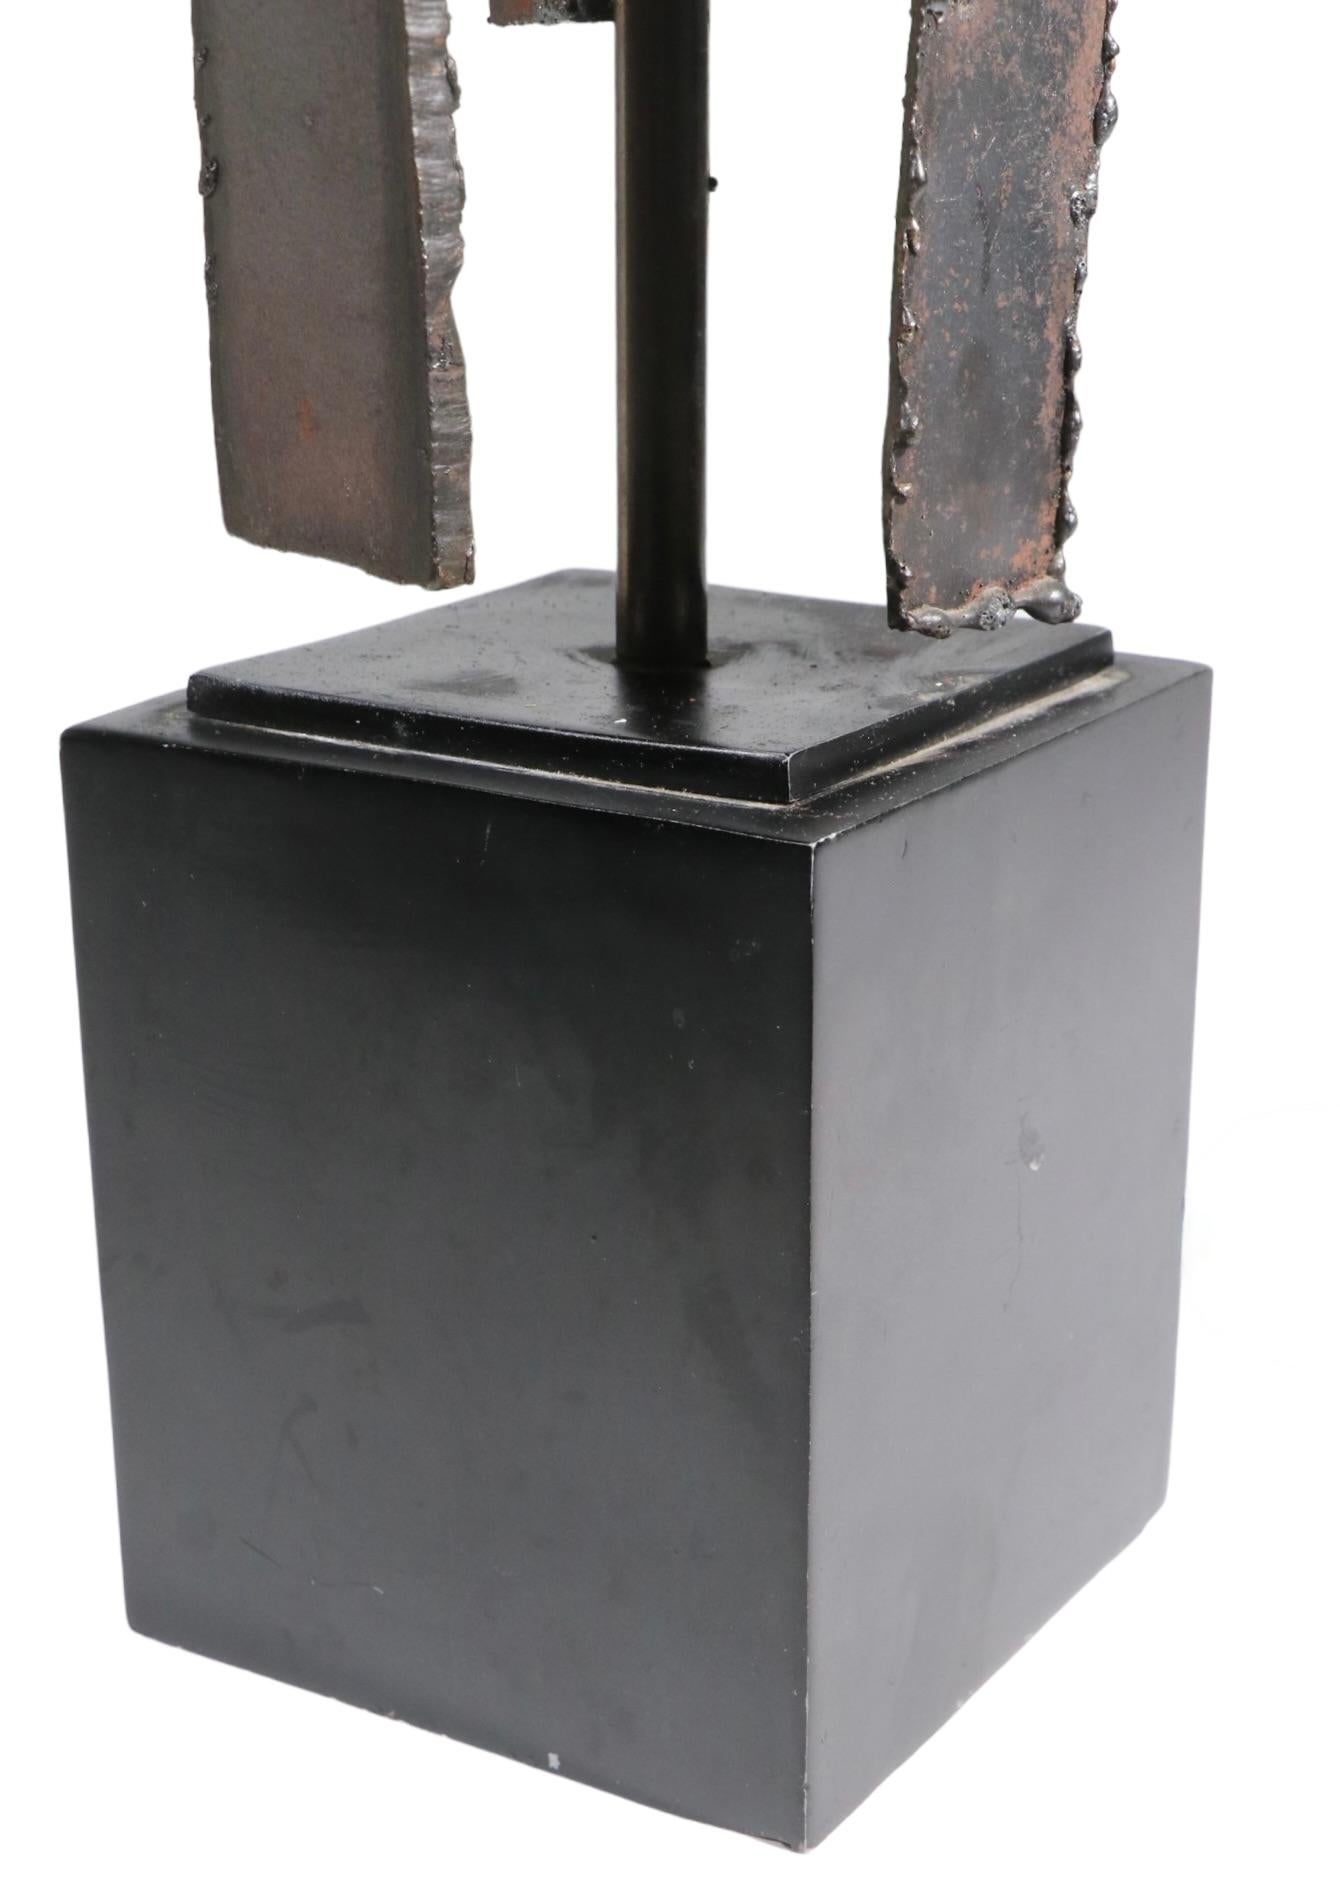 Brutalistische Tischleuchte von Harry Blamer für die Laurel Lamp Company, um 1970. Die Leuchte hat einen brenngeschnittenen Körper aus geschweißten Eisensegmenten, der auf einem rechteckigen Sockel montiert ist. Dieses Exemplar ist in einem sehr